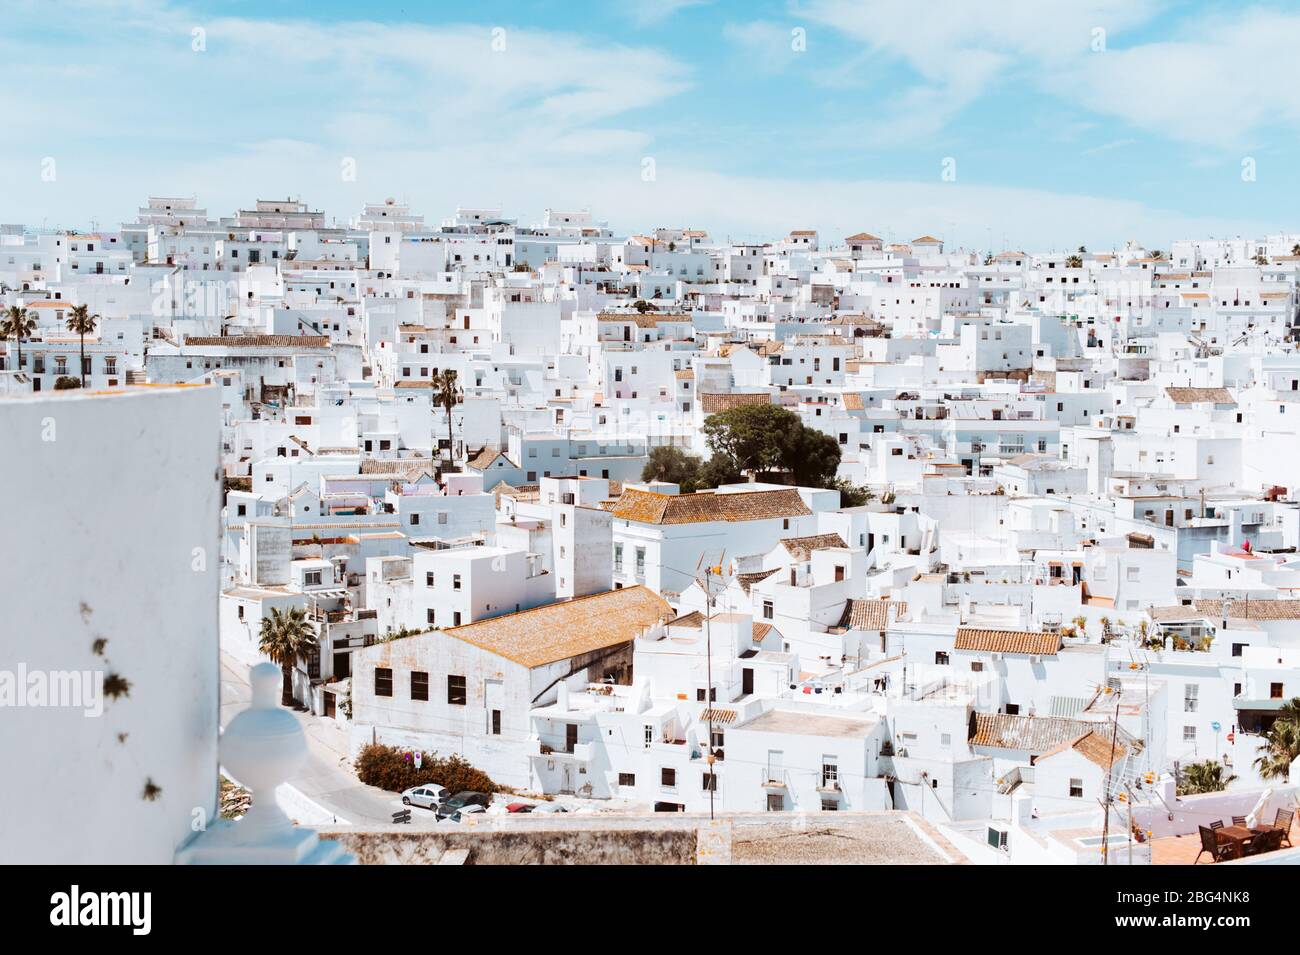 Pueblo de casas blancas contra el cielo azul en el sur de España Foto de stock